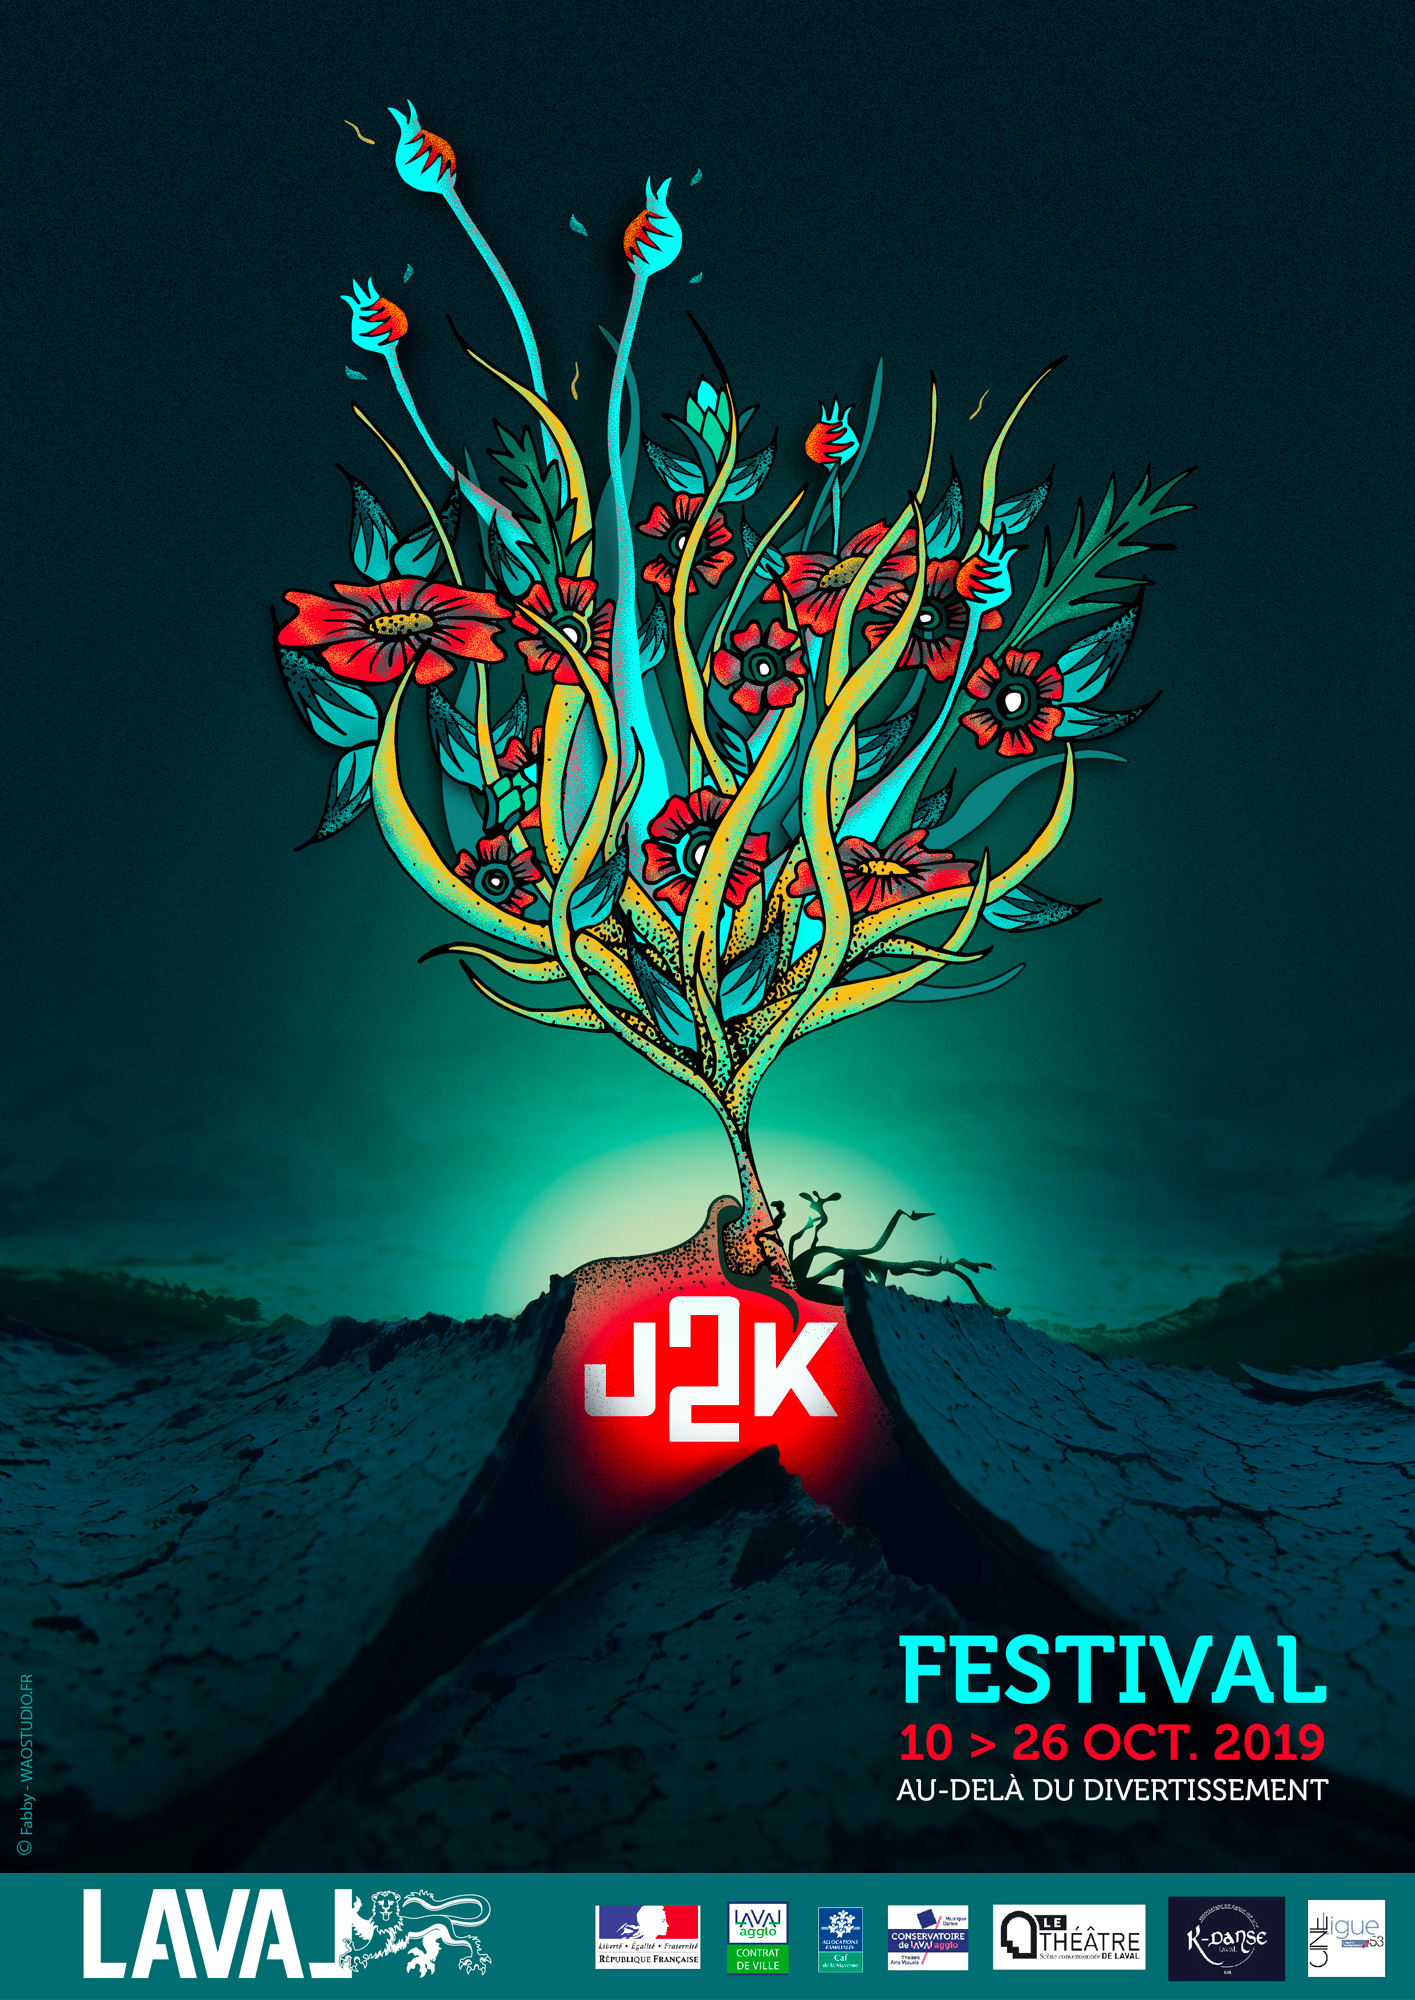 FESTIVAL J2K